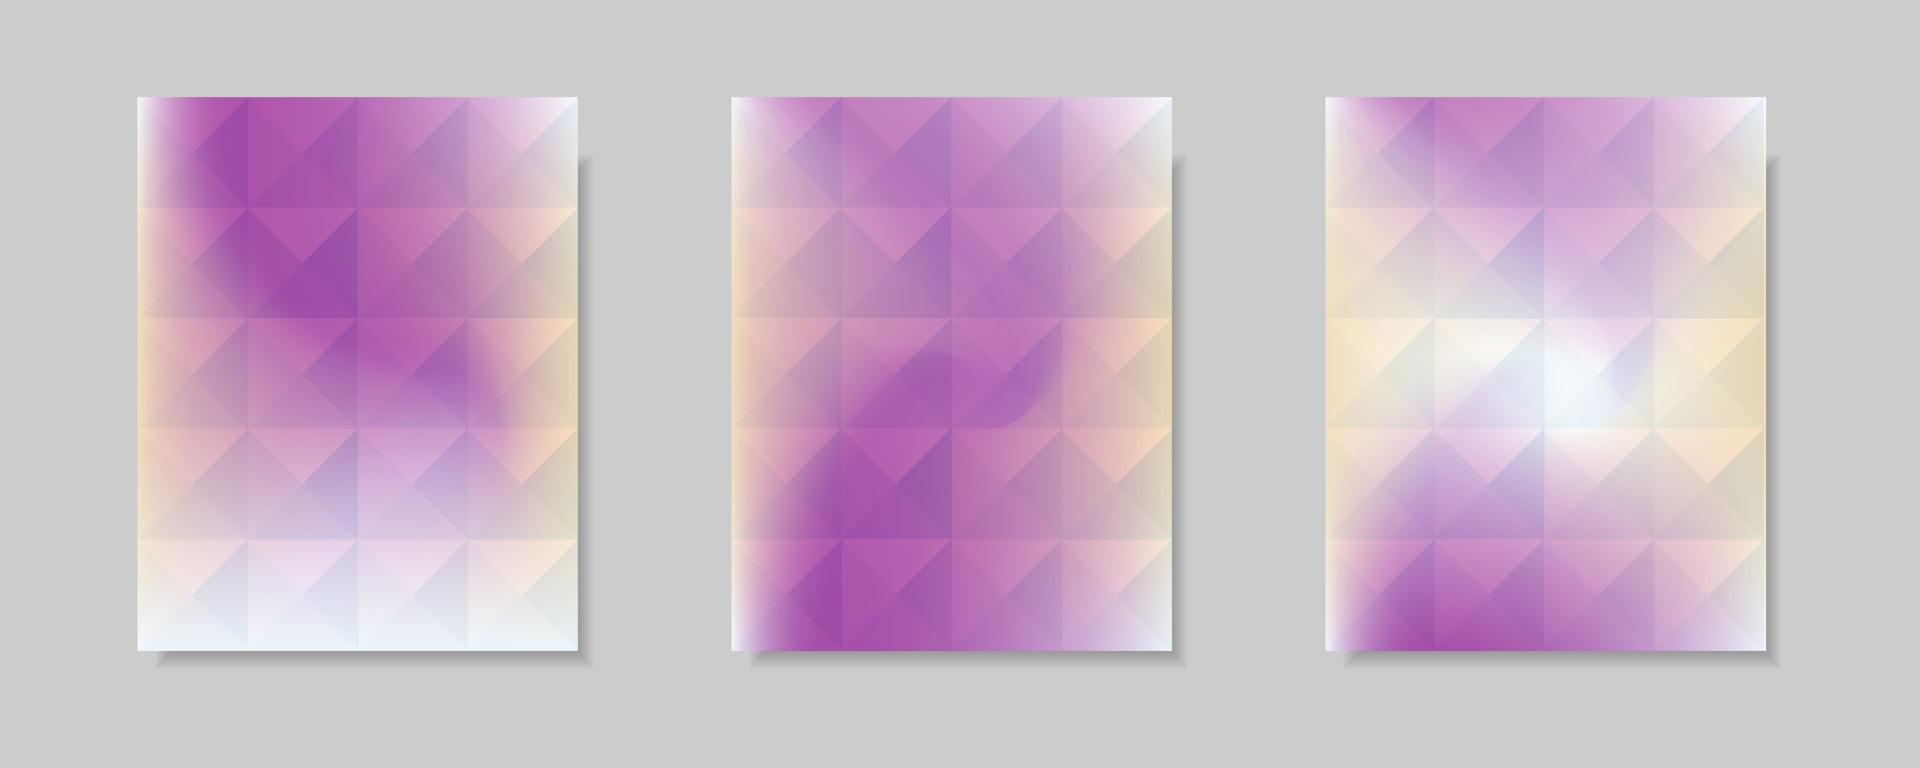 colección de fondos abstractos de portada de vector degradado de color blanco púrpura. diseño de patrón triangular con estilo de forma de cristal. para fondos de folletos comerciales, carteles y diseños gráficos.